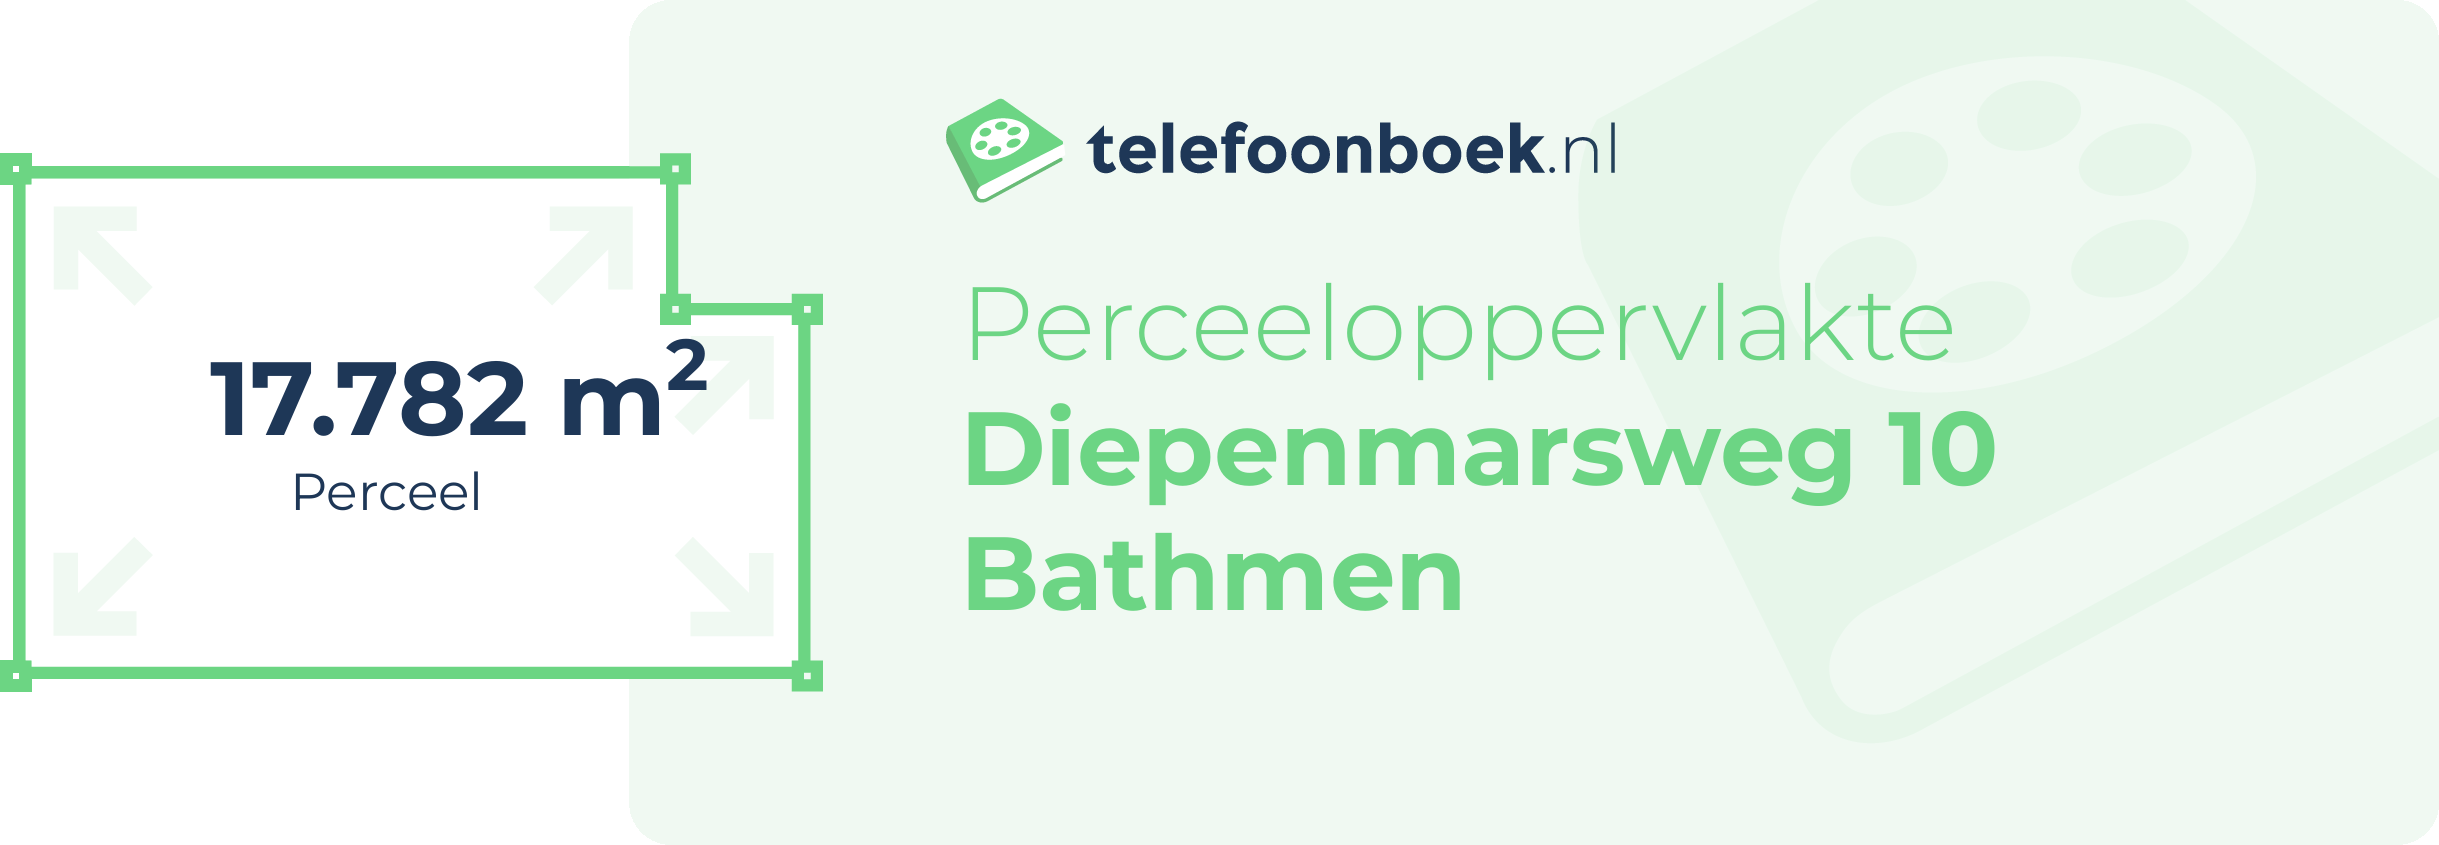 Perceeloppervlakte Diepenmarsweg 10 Bathmen